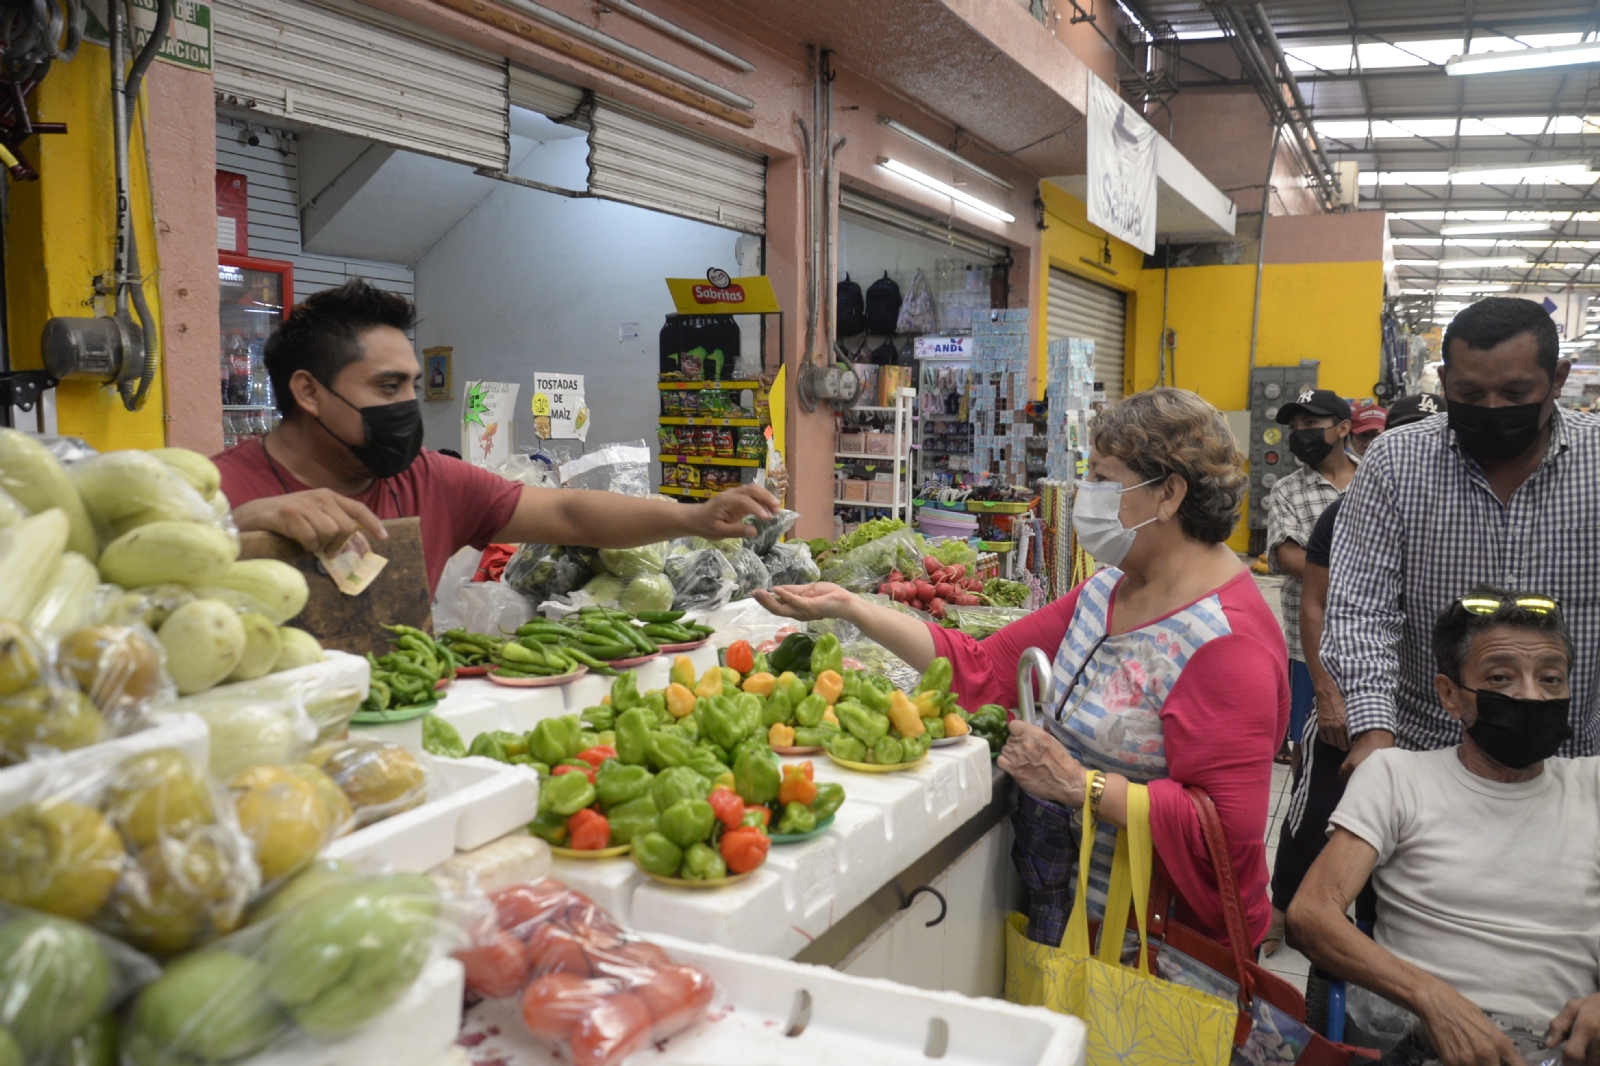 Cena de Año Nuevo podría salir más cara, estos son los precios en mercados de Mérida